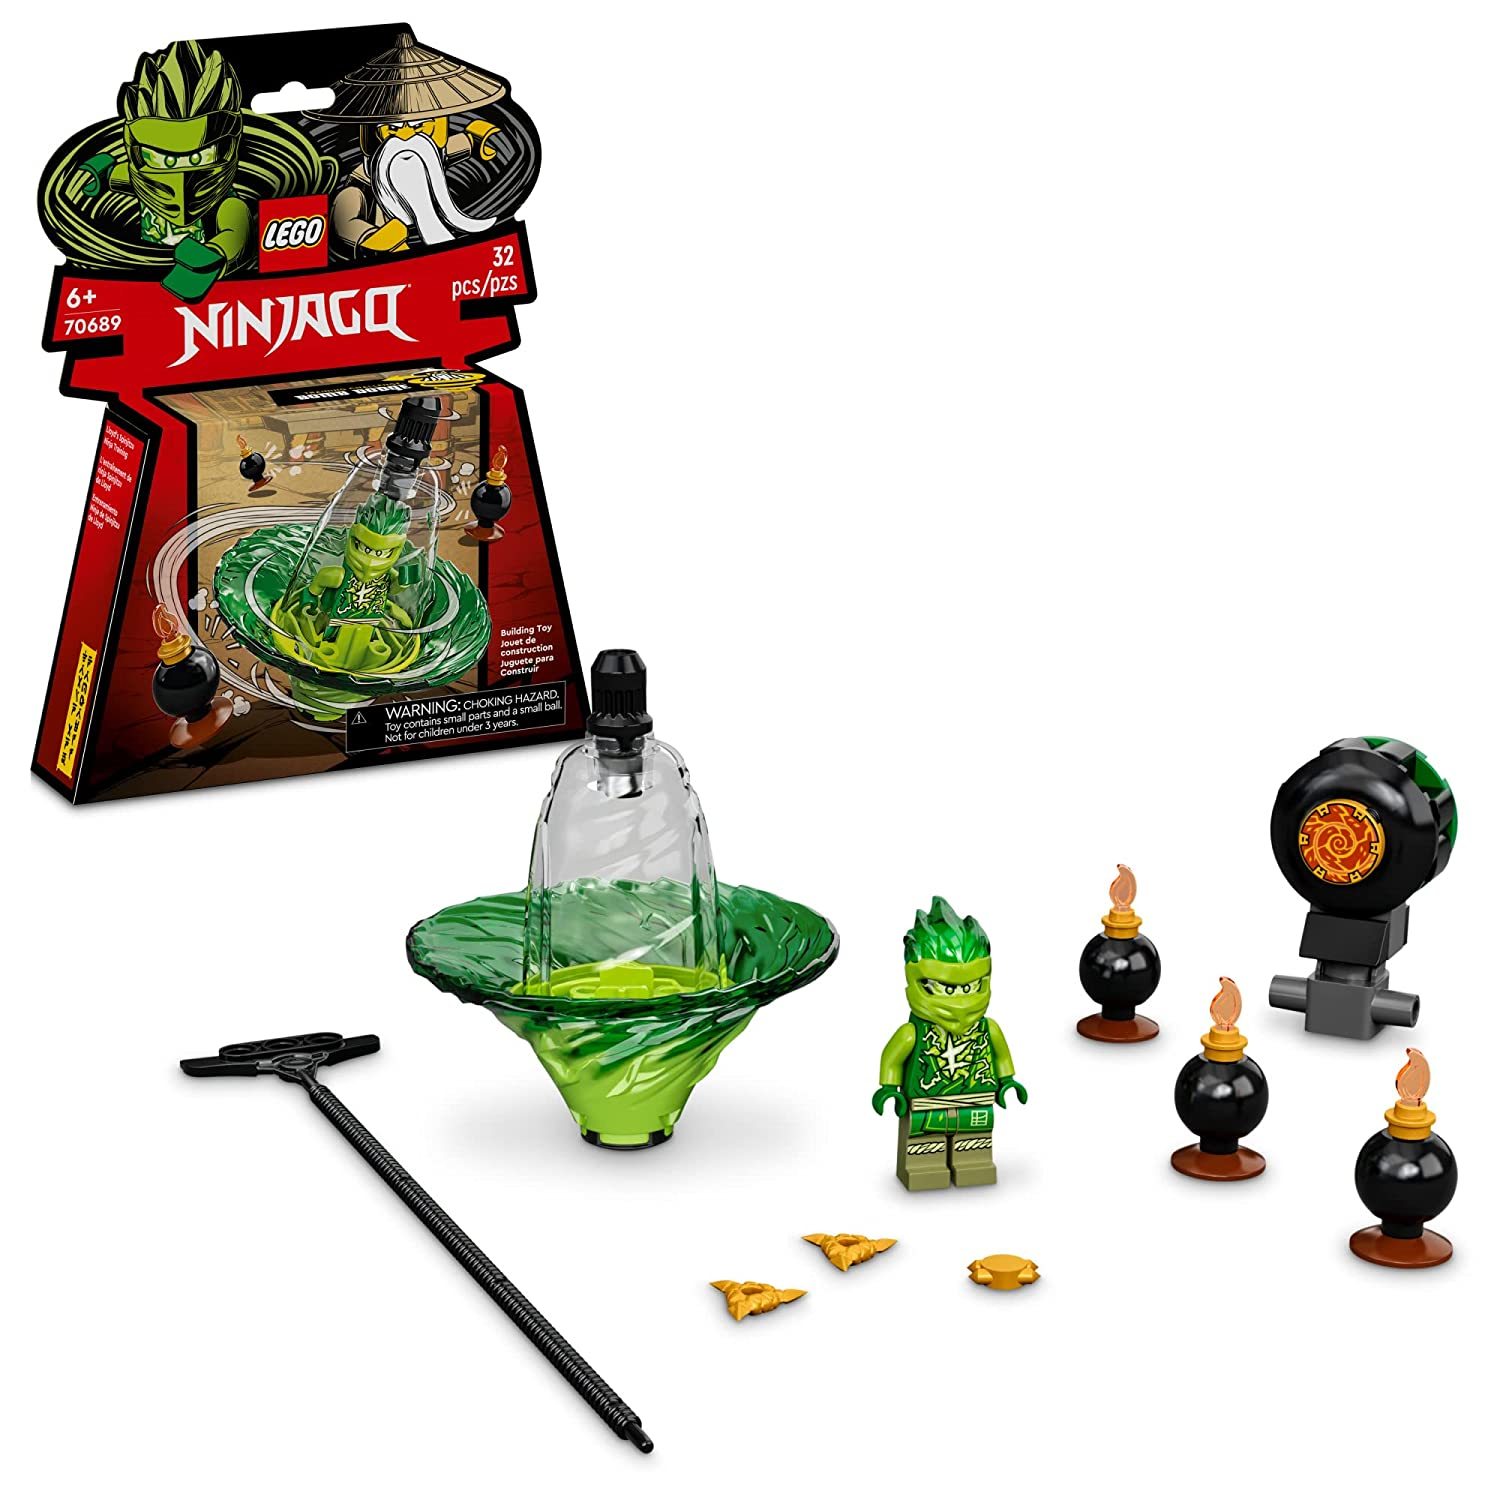 LEGO NINJAGO Lloyds Spinjitzu Ninja Training 70689 Spinning Toy Building Kit wit